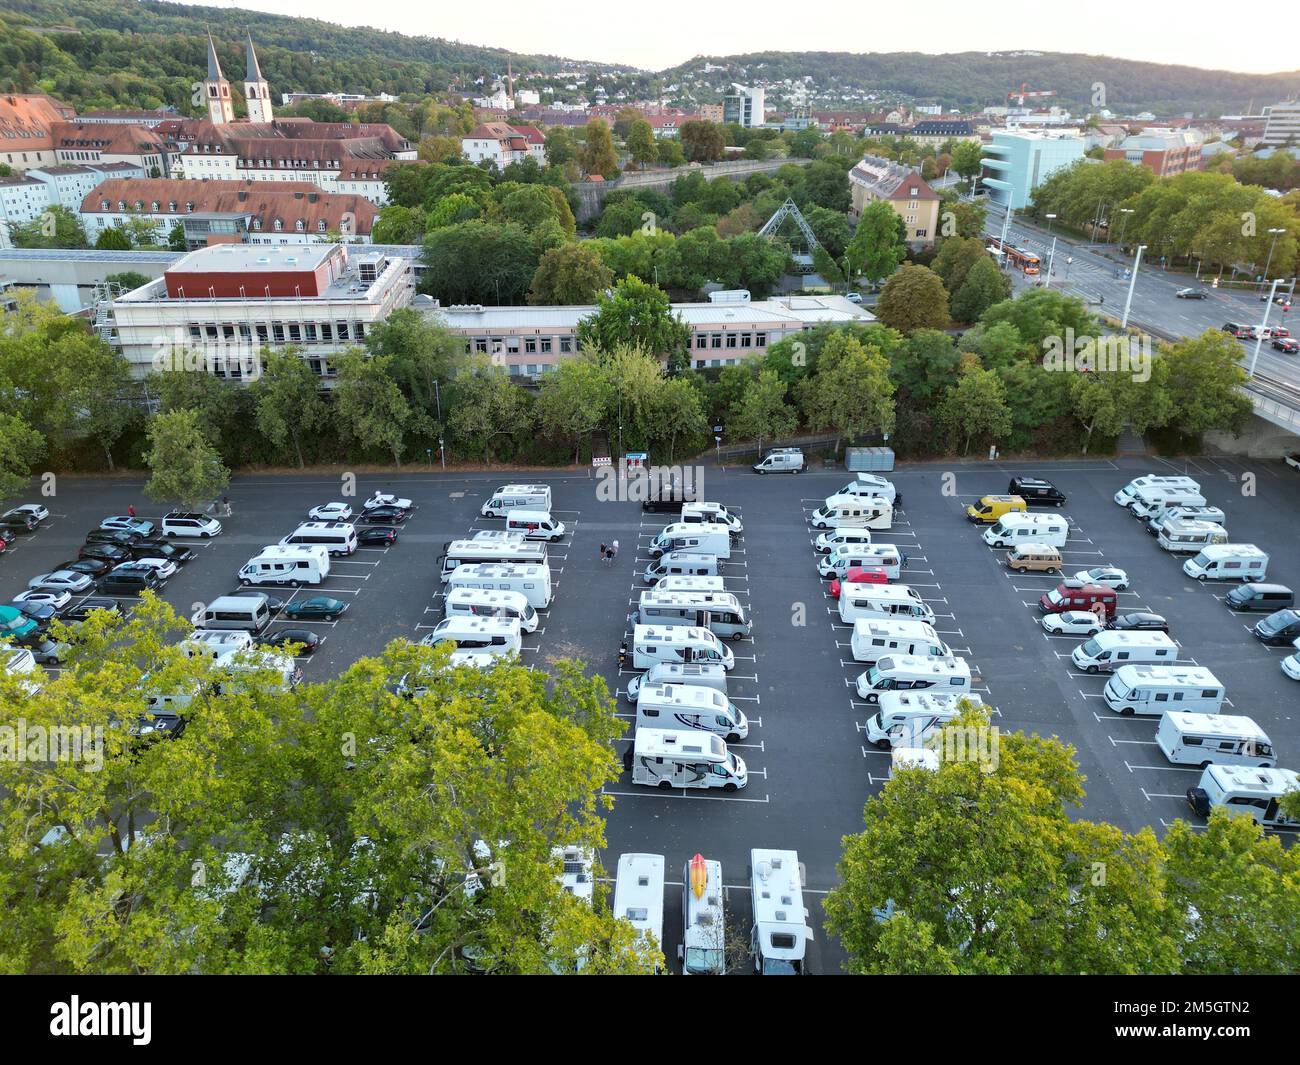 Parcheggio camper Wuzburg città Germania drone vista aerea Foto Stock